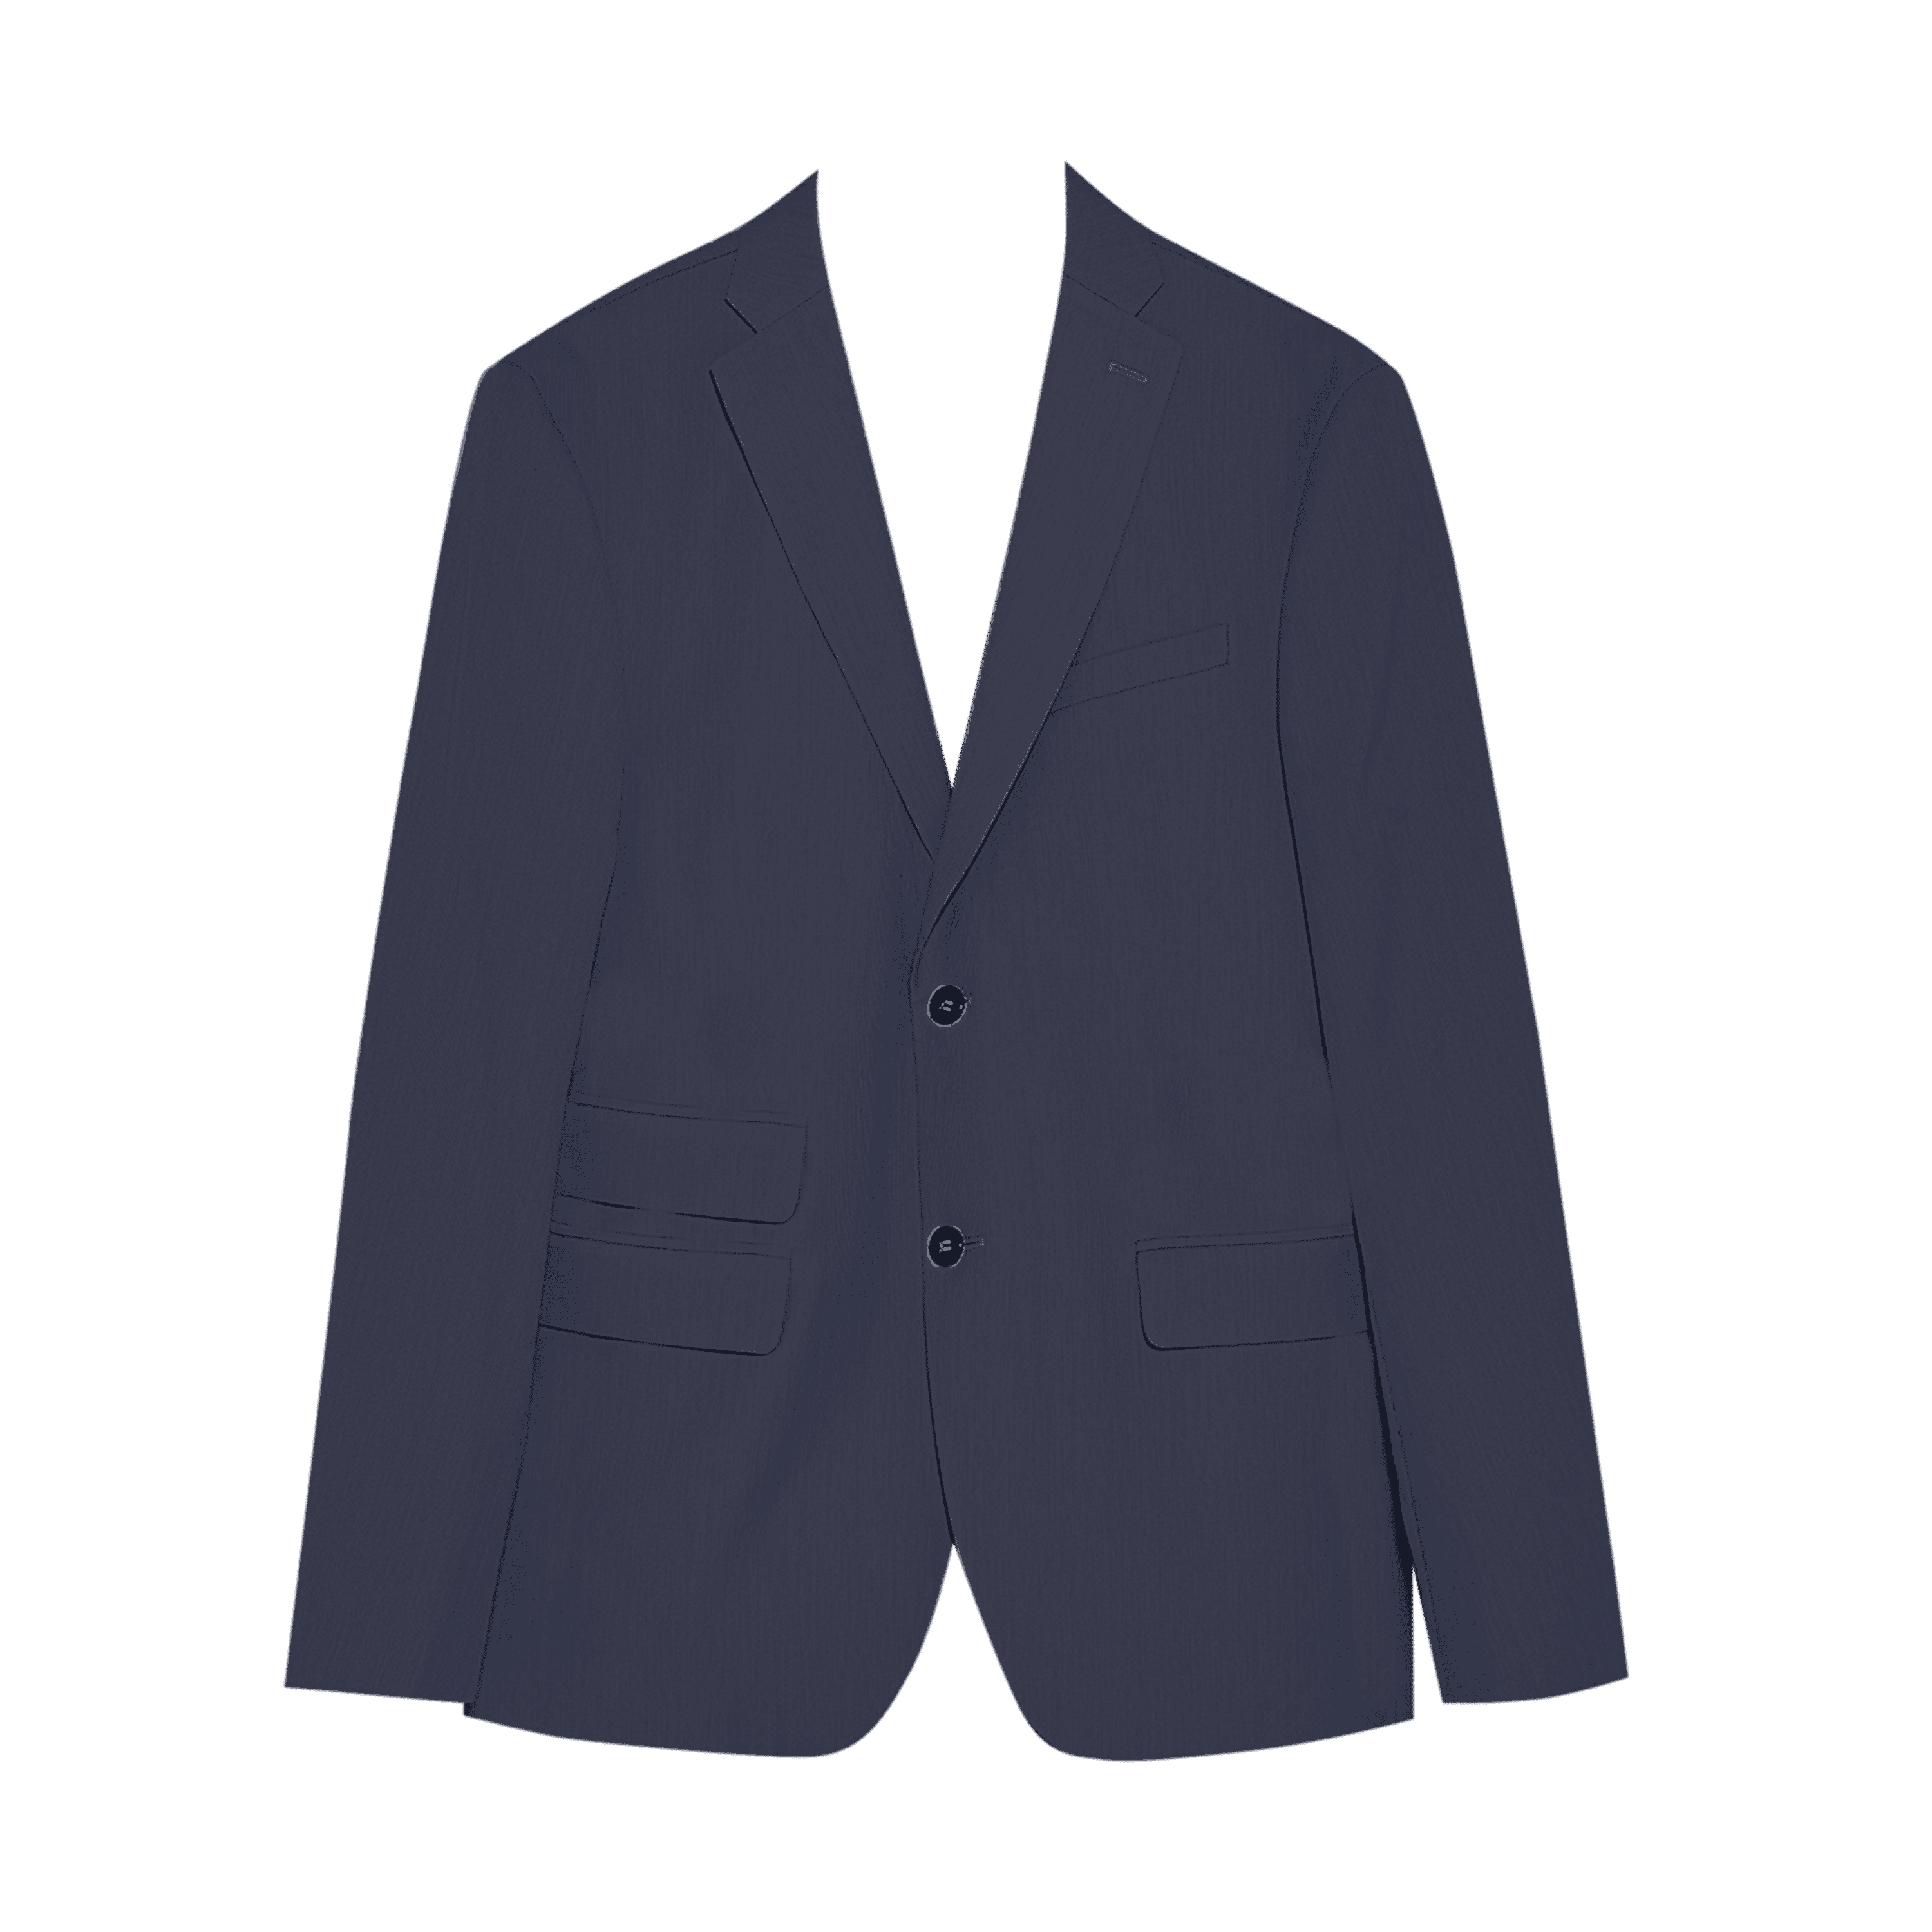 Men Dark Grey Single-Breasted Slim-Fit 2-Piece Suit-RKFCMS002